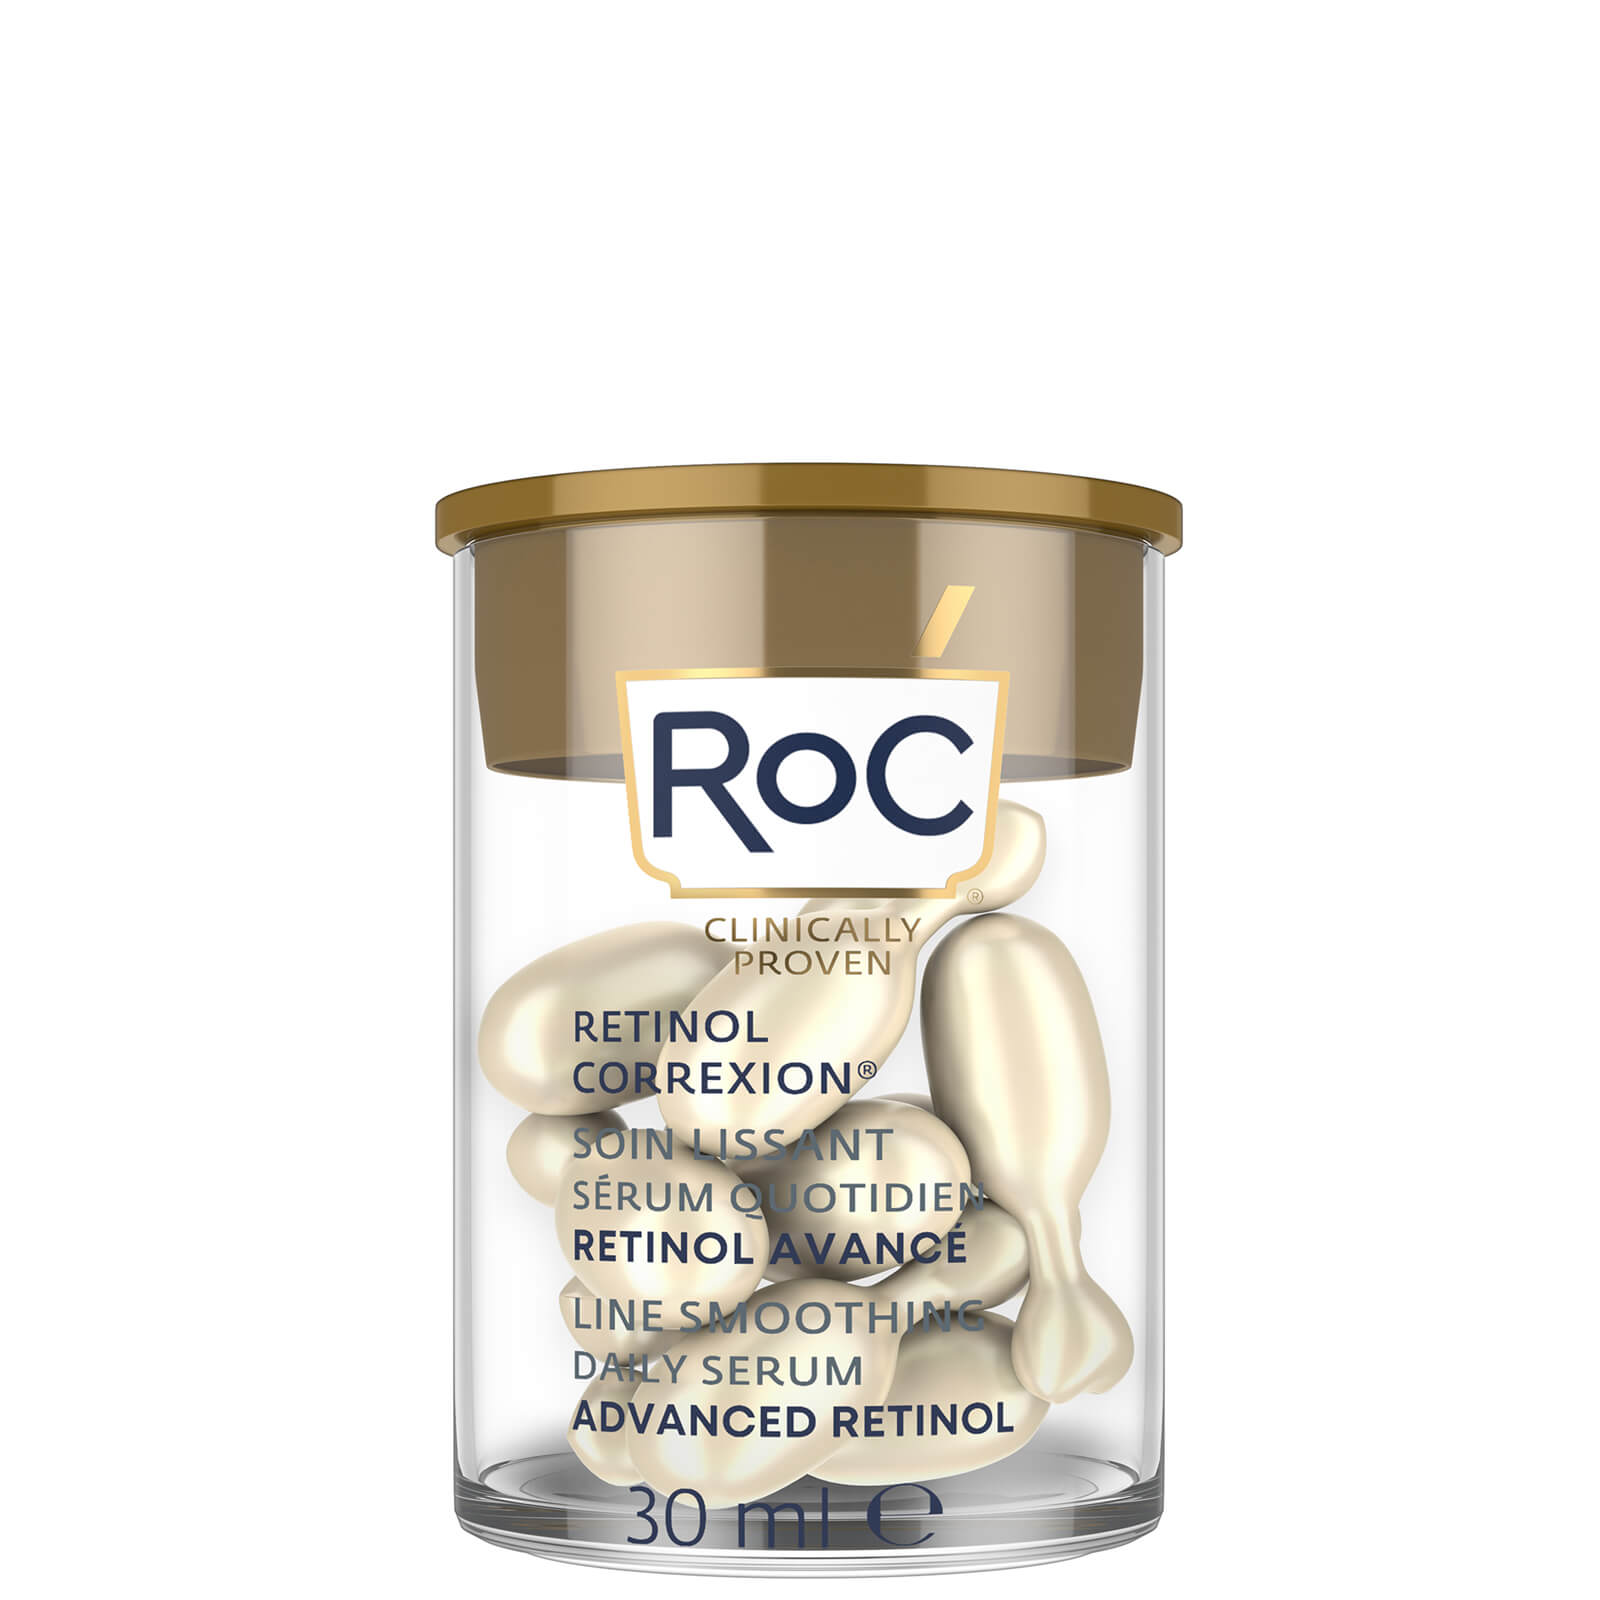 RoC Retinol Correxion Line Smoothing Night Serum Capsules (Various Options) - 10 Capsules